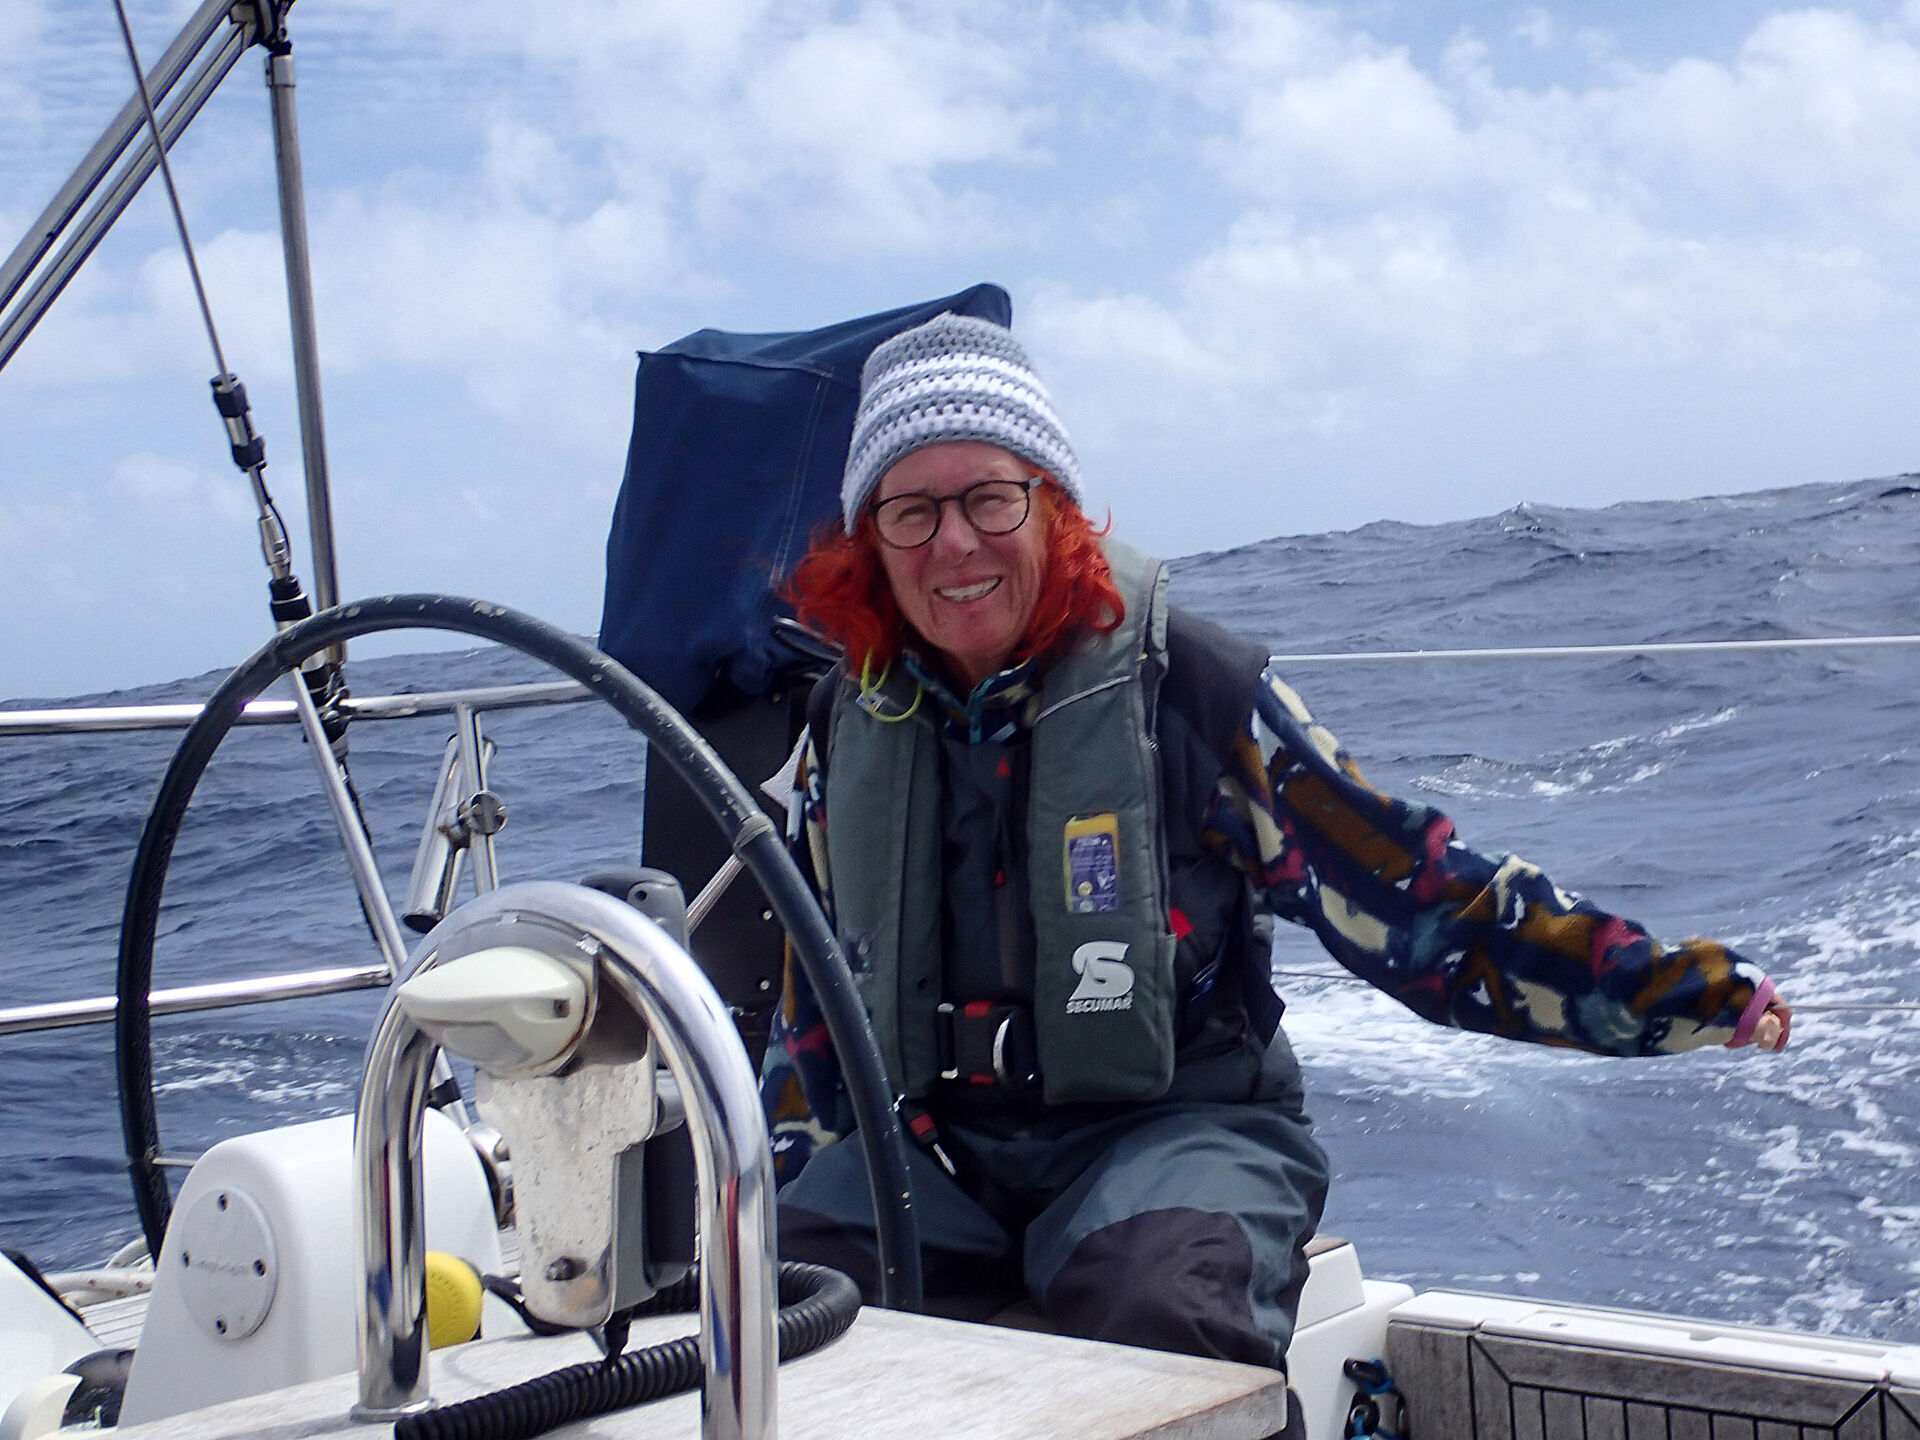 Seglerin und Spenderin Brigitte Honnens sitzt an Bord Ihrer Segelyacht, bekleidet mit Rettungsweste und Pudelmütze. Im Hintergrund Wasser und blauer Himmel, vor ihr das Ruder.